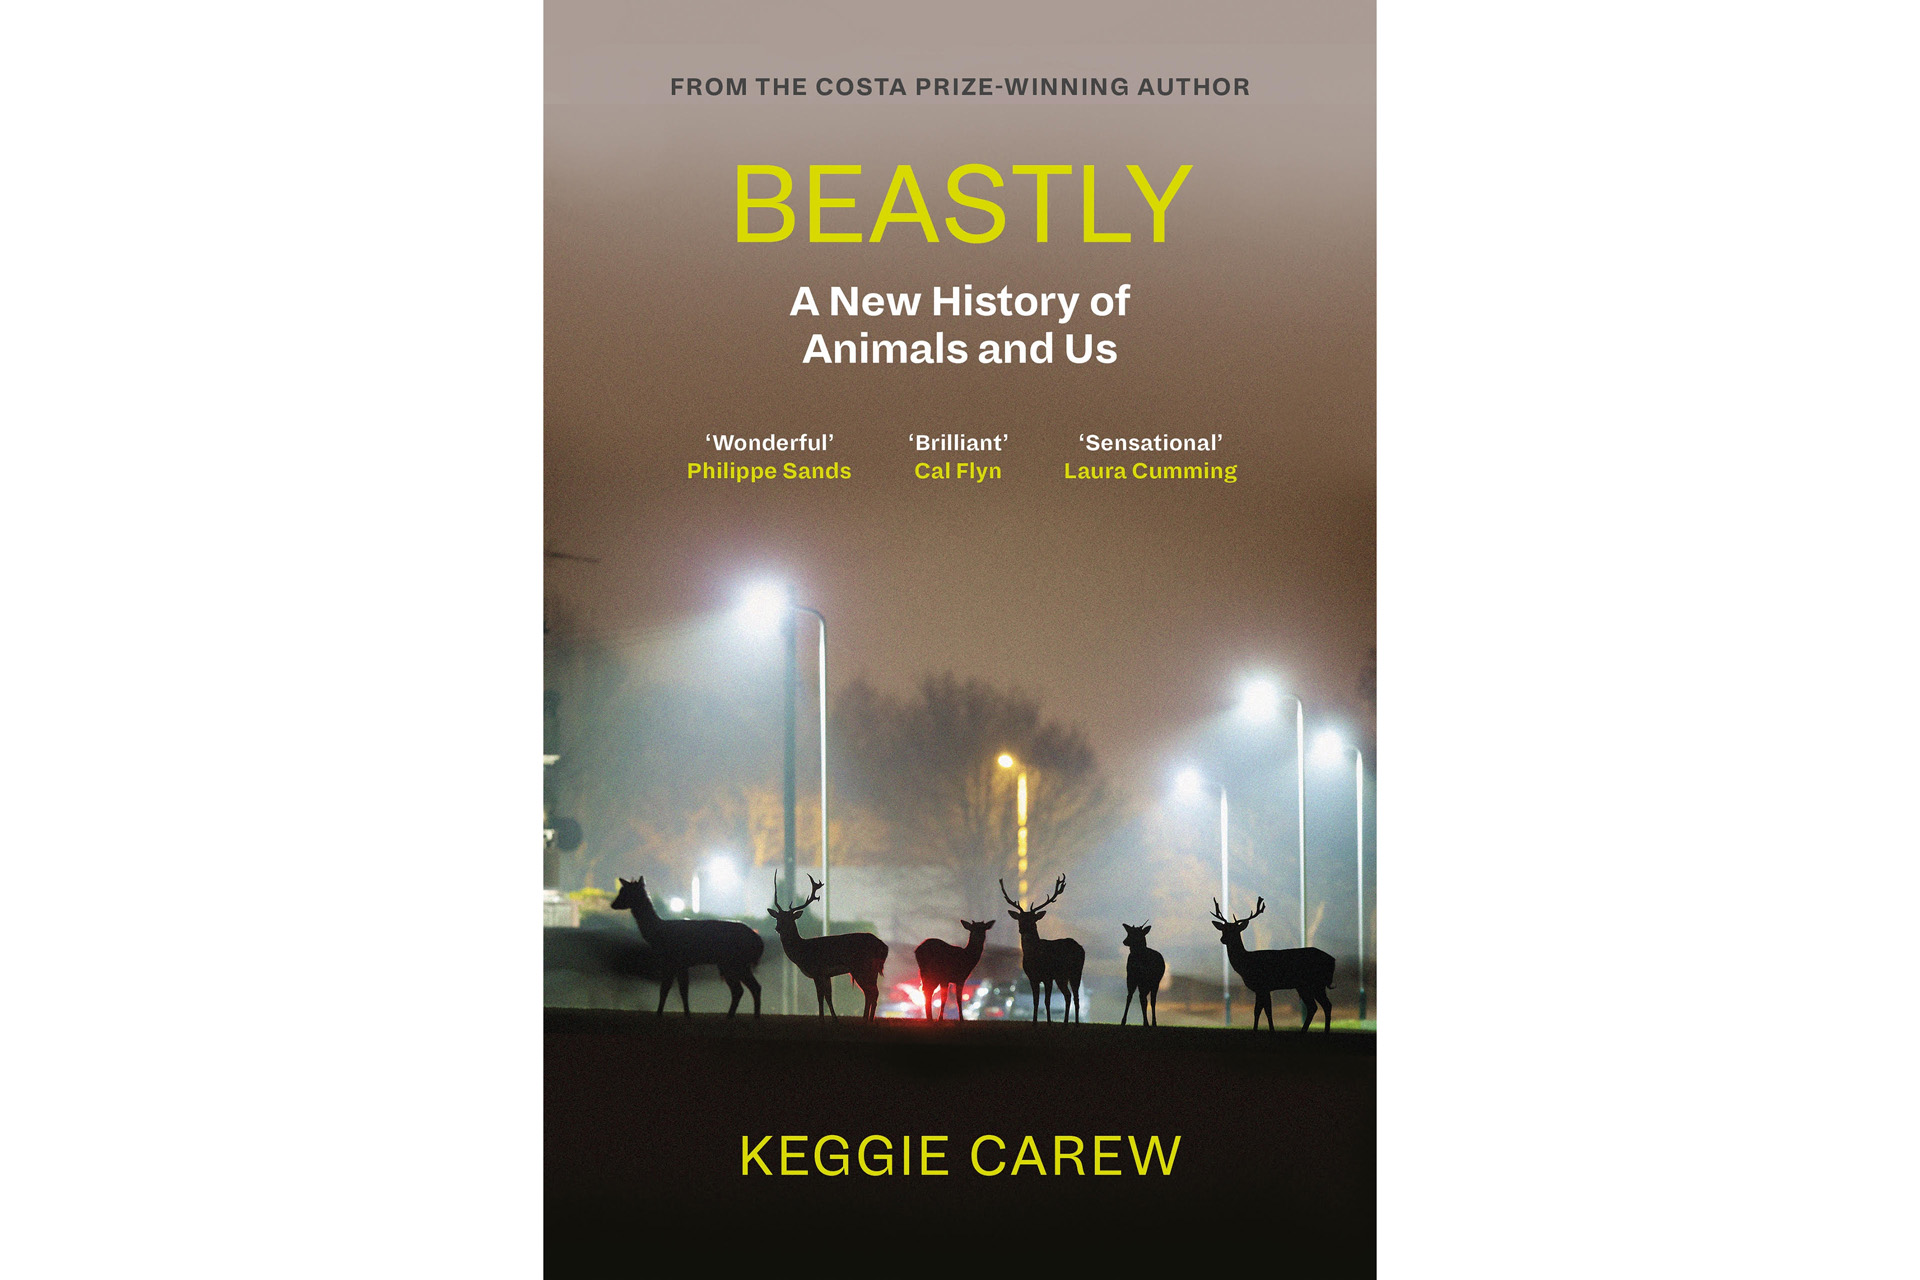 Beastly by Keggie Carew